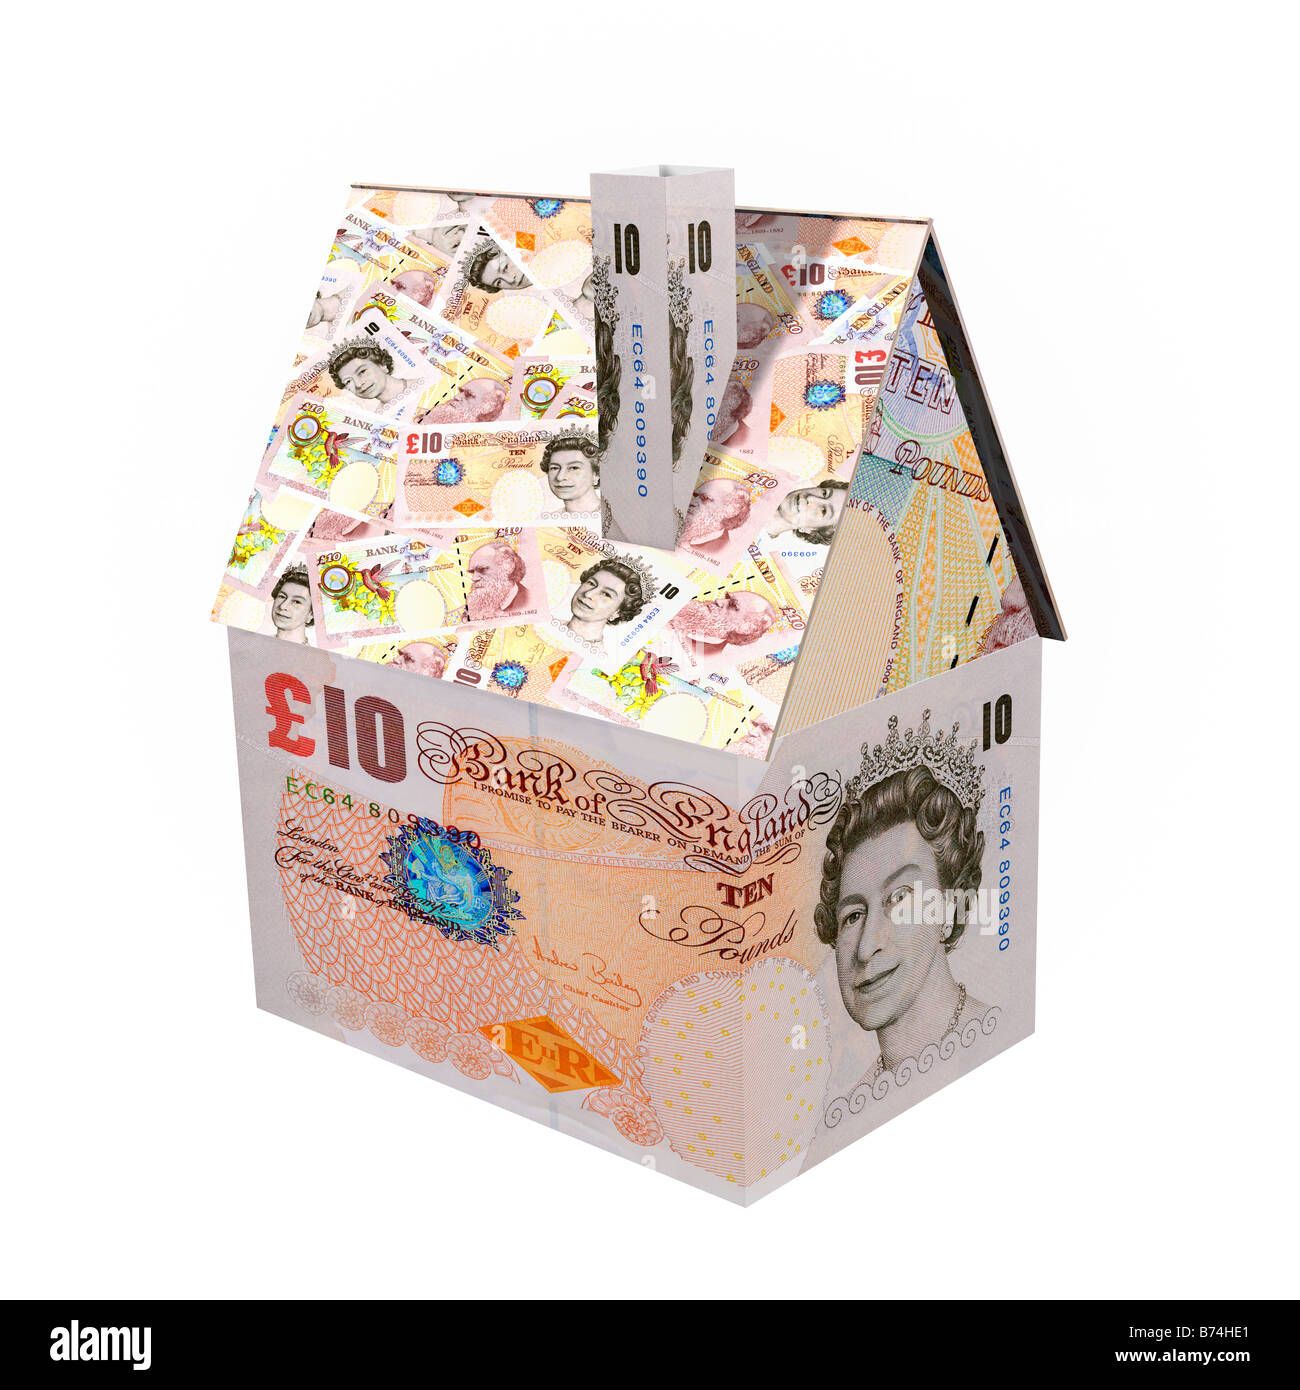 Piccola casa fatta da 10 Pound sterling note - 3D render CGI concetto finanziario Foto Stock